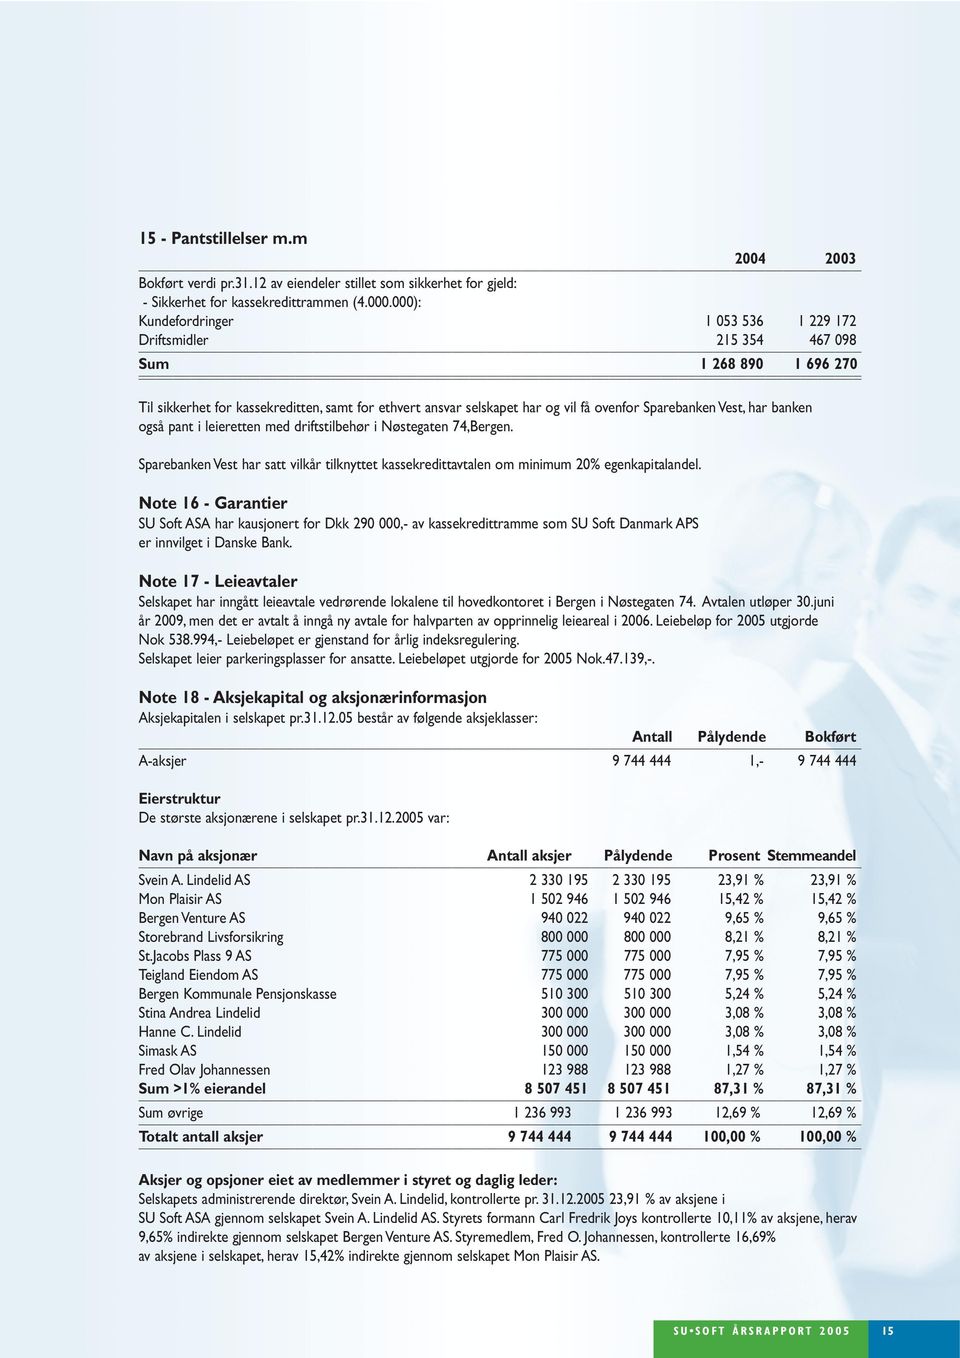 Nøstegaten 74,Bergen. Sparebanken Vest har satt vilkår tilknyttet kassekredittavtalen om minimum 2% egenkapitalandel.